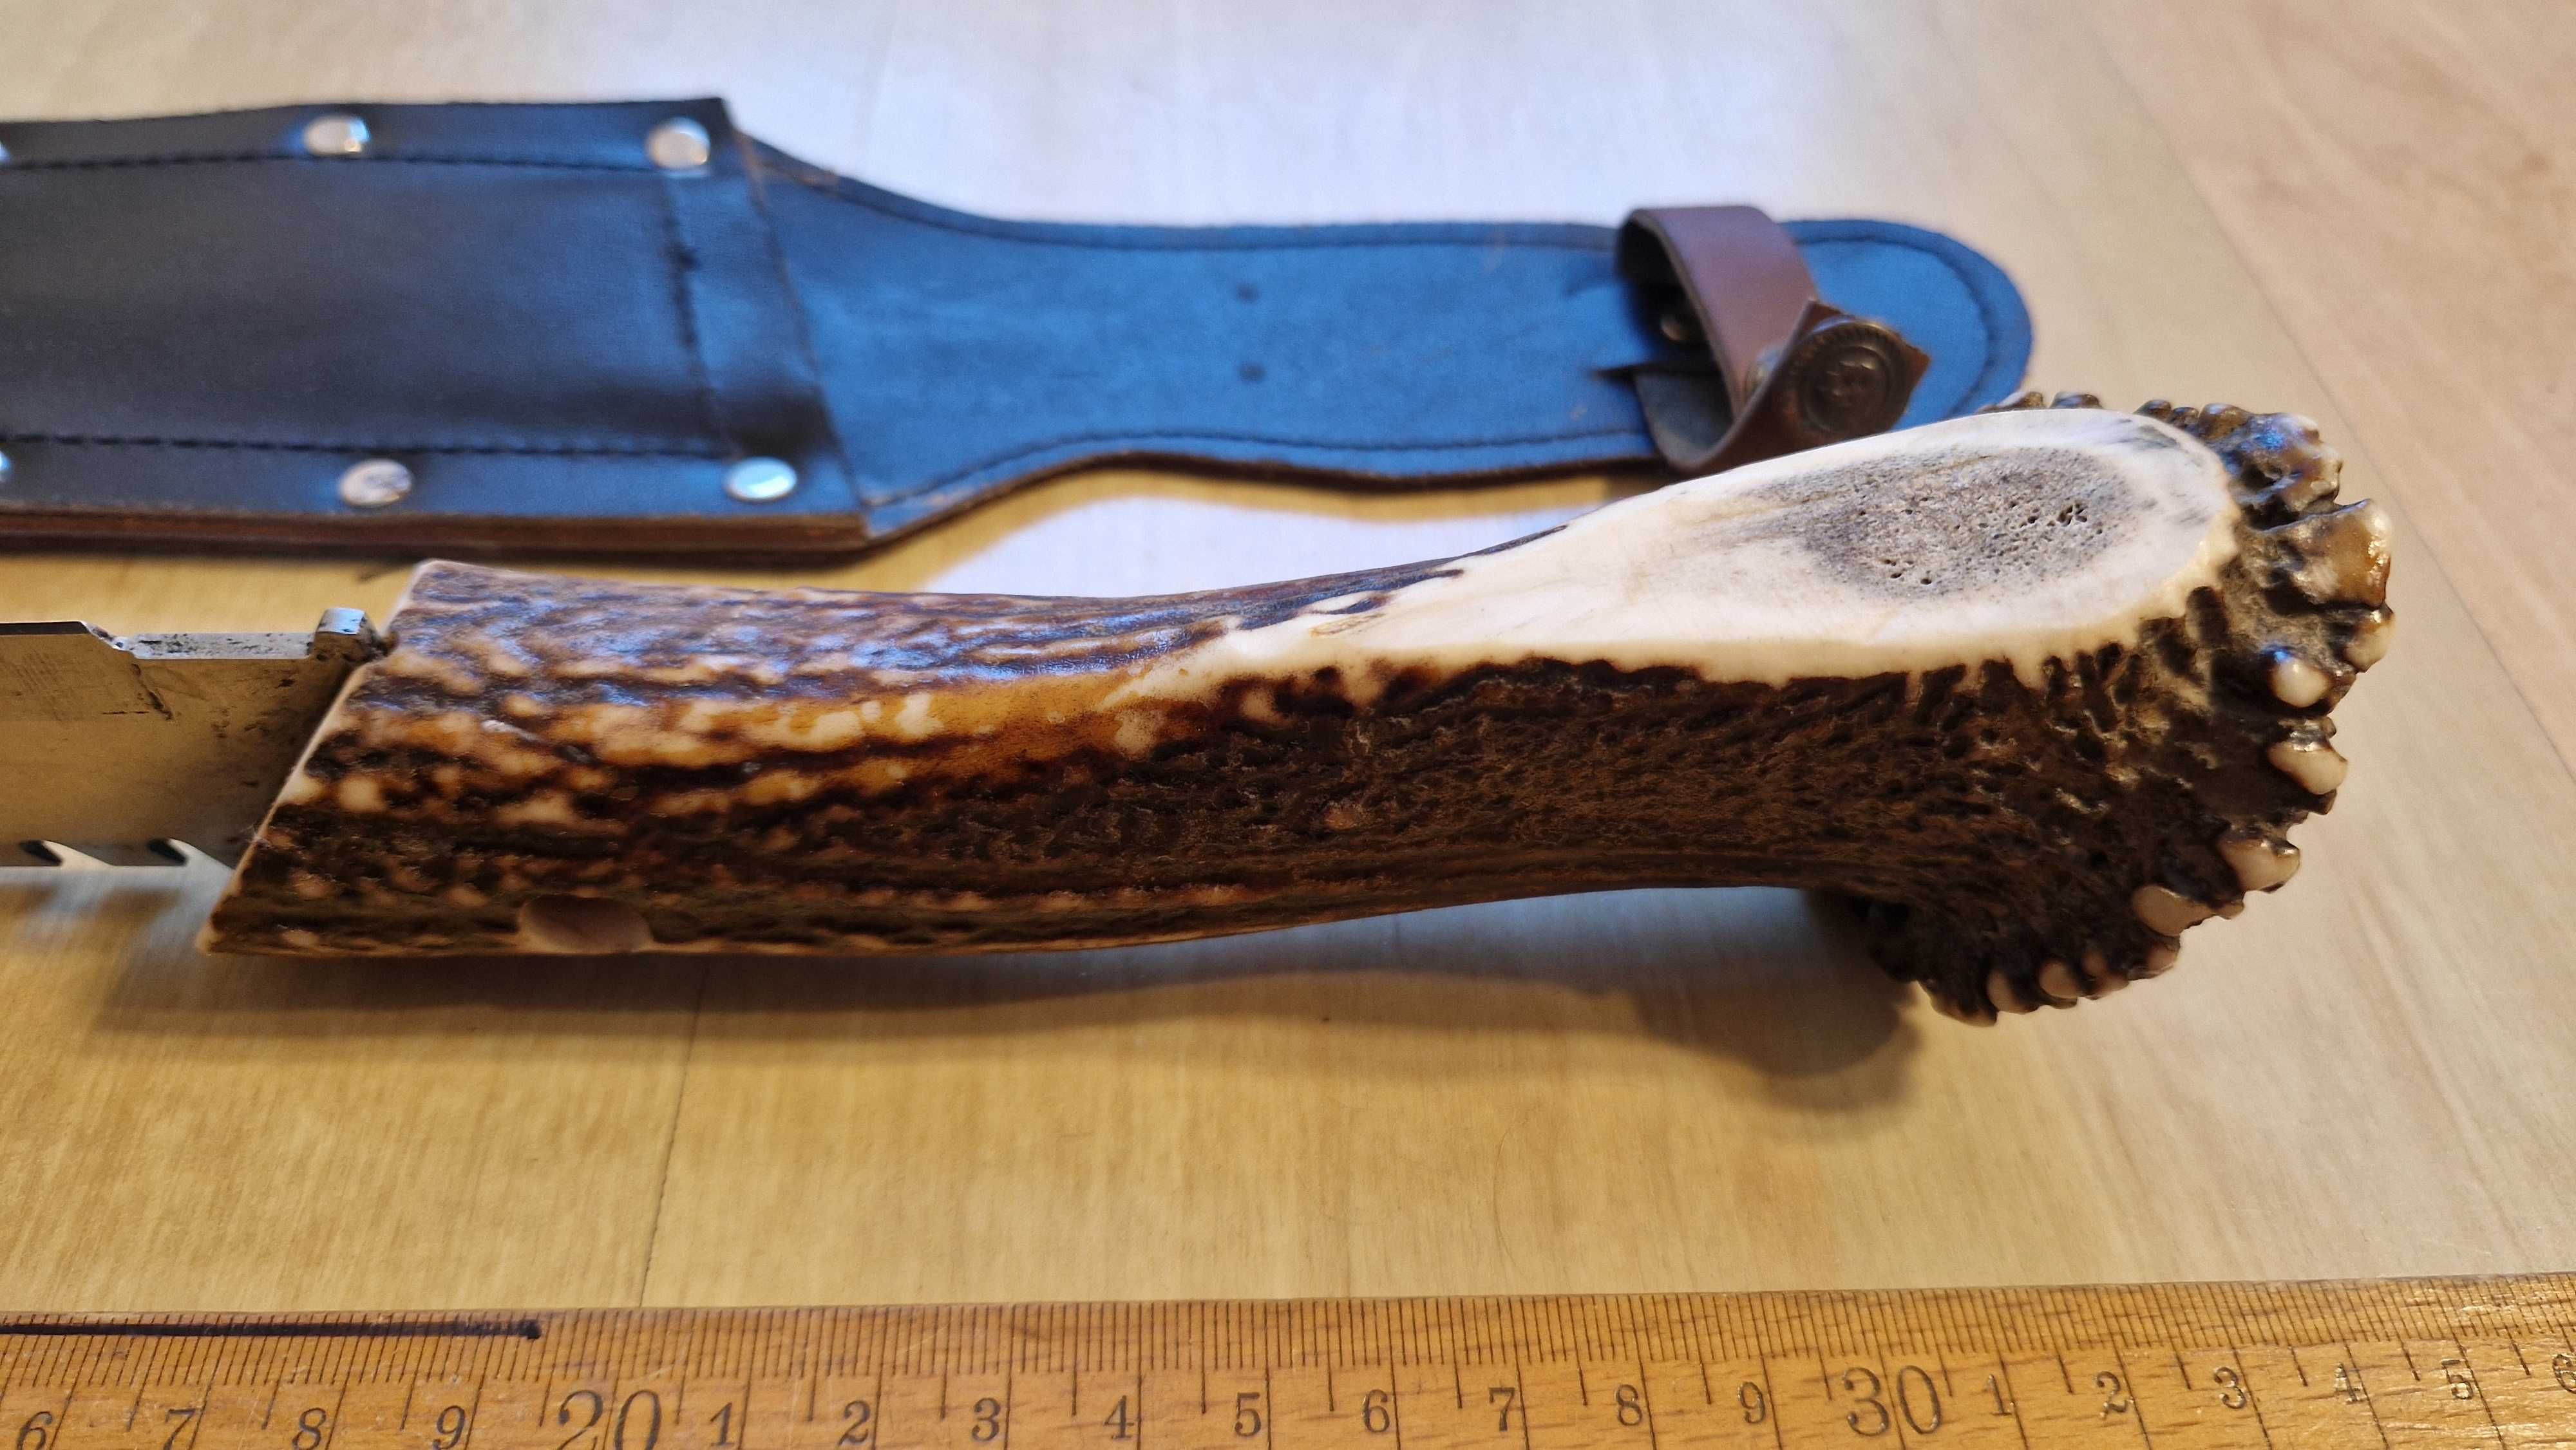 duży nóż myśliwski survivalowy oprawiony w poroże 16cm